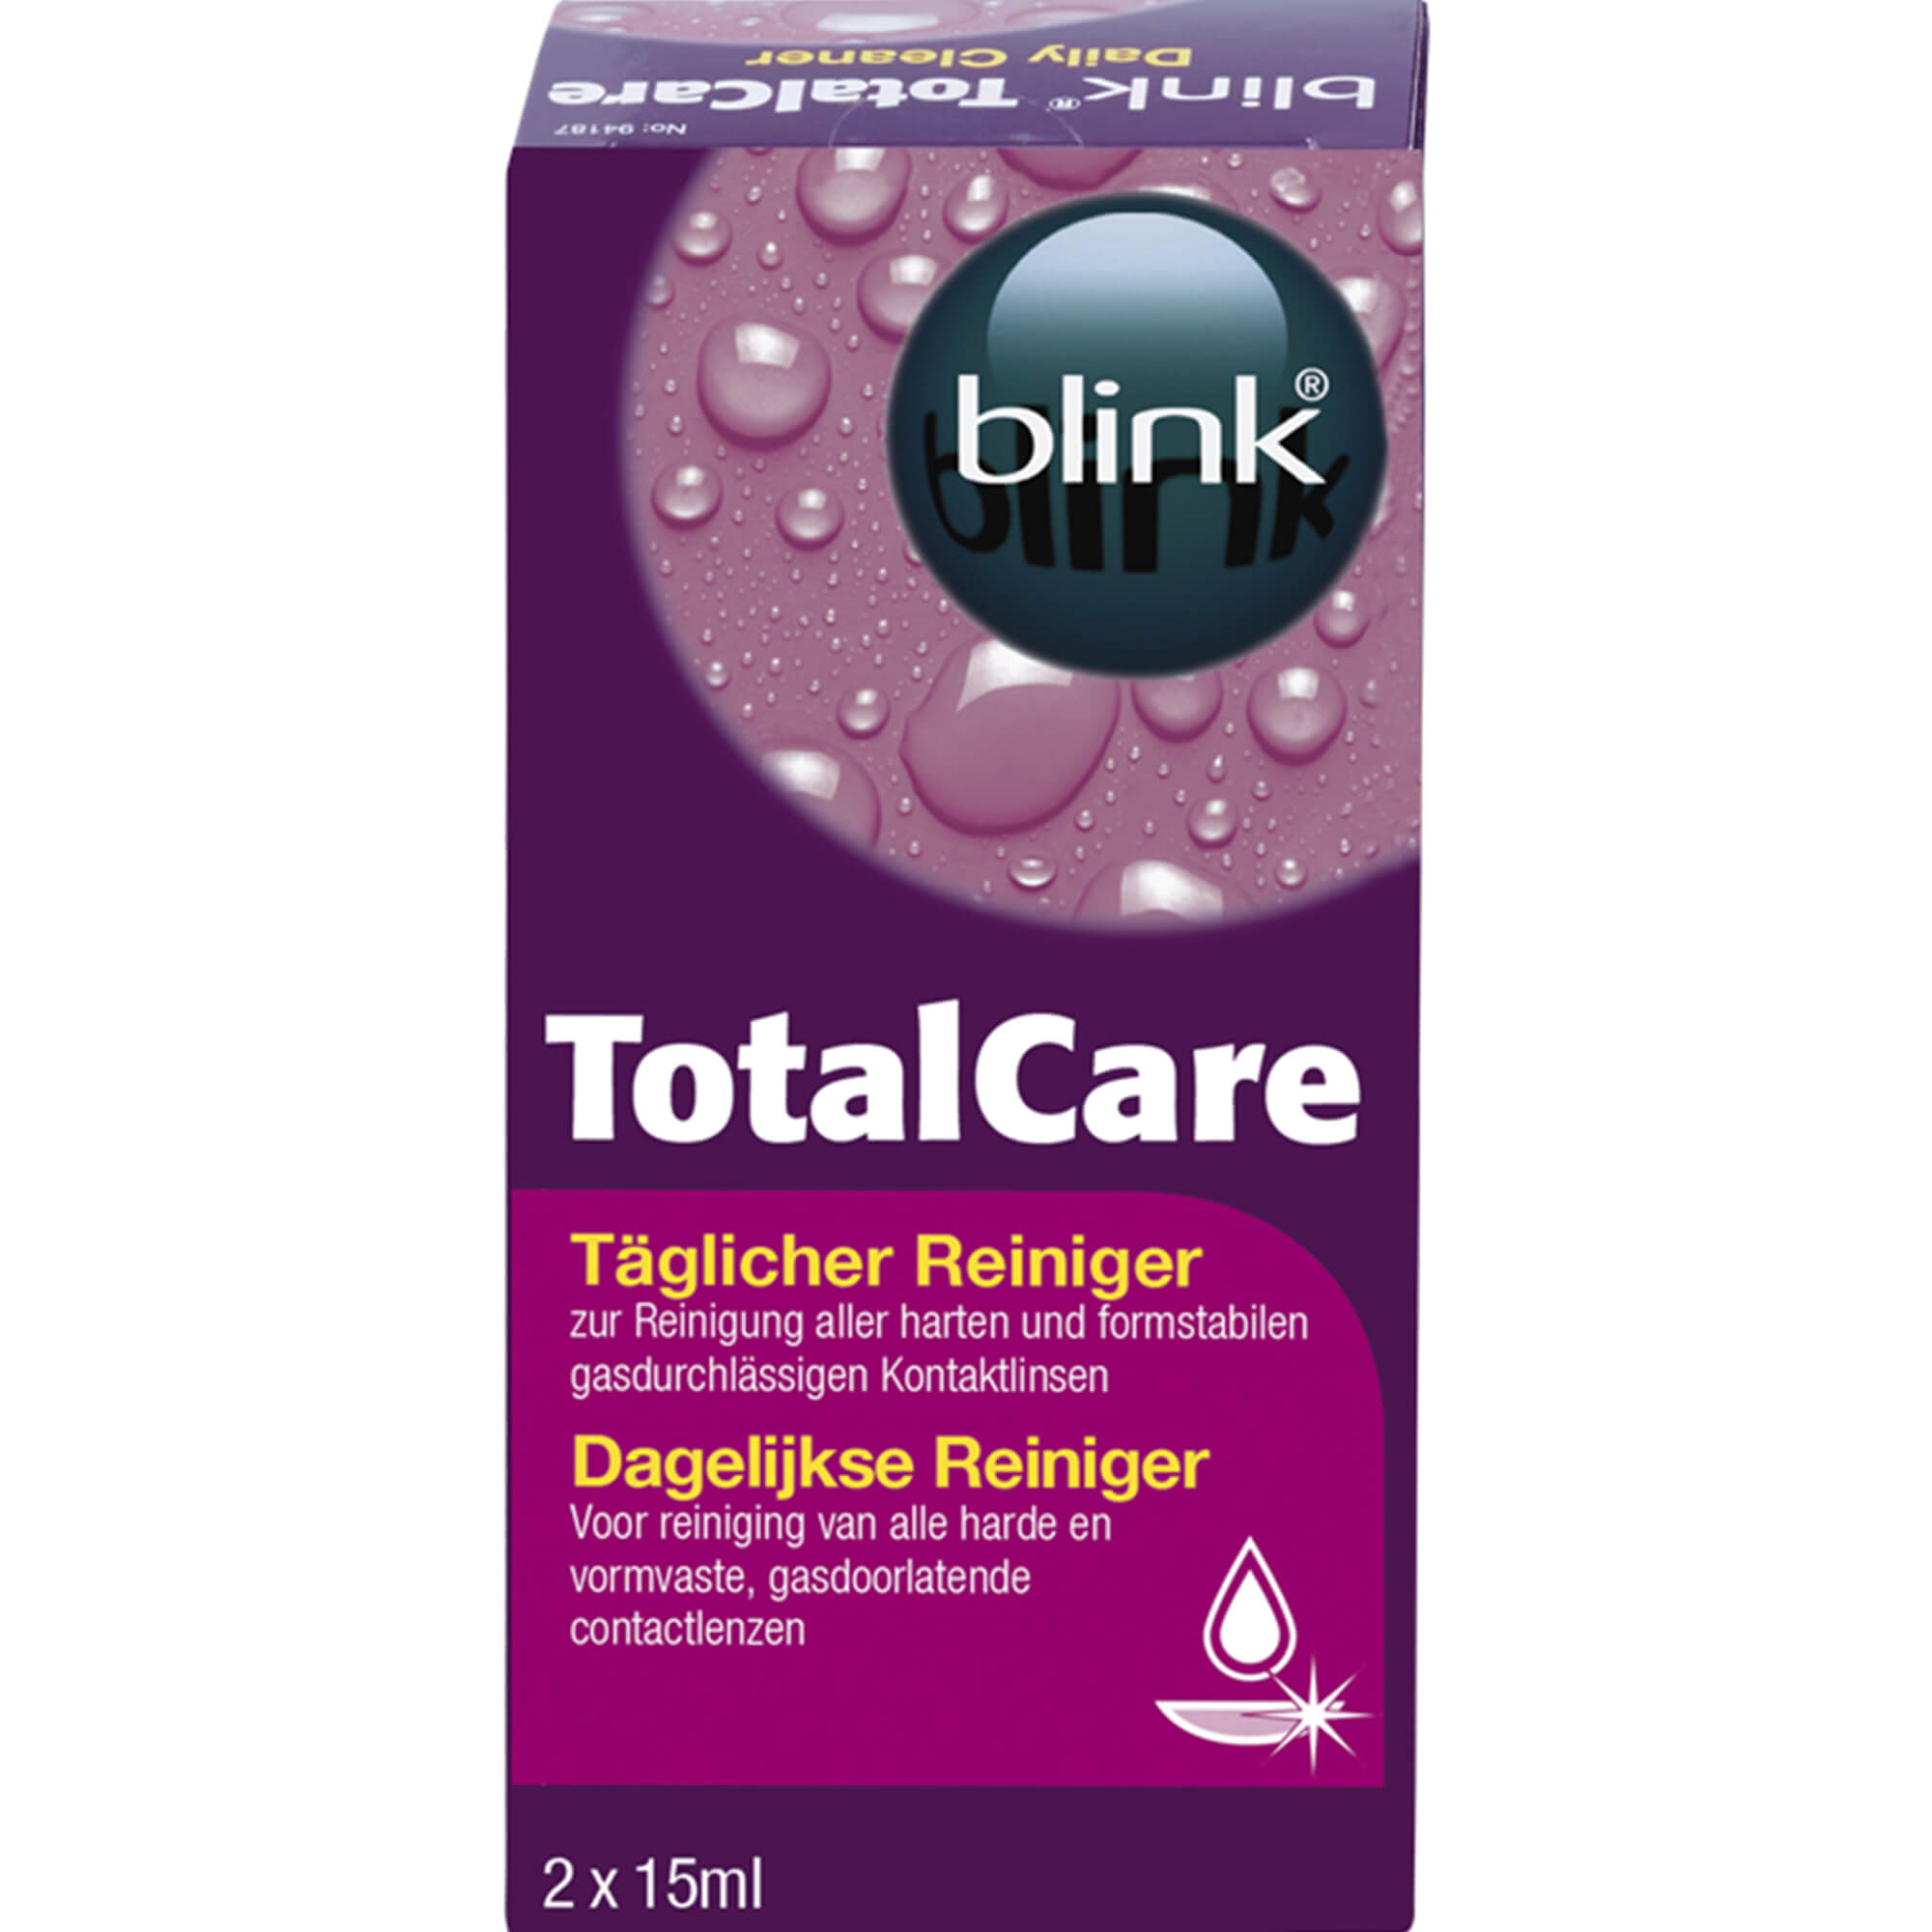 BLINK TotalCare täglicher Reiniger